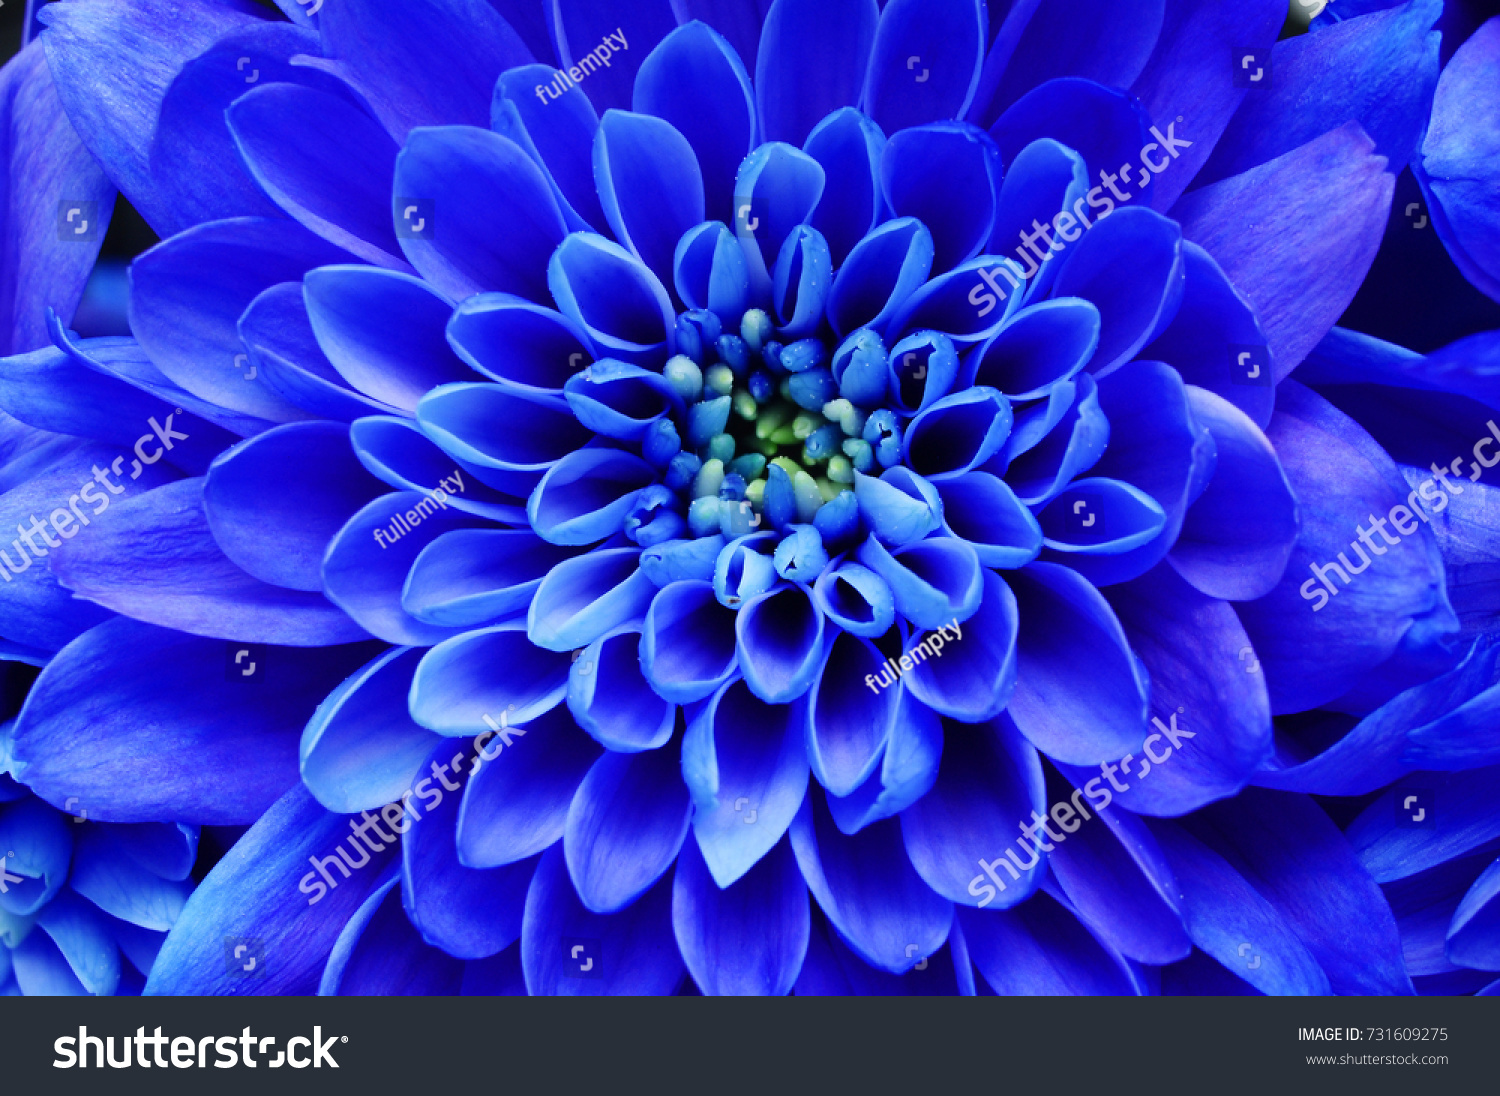 青の花の背景 青い花の接写 背景またはテクスチャー用の青い花びらを持つアスター の写真素材 今すぐ編集